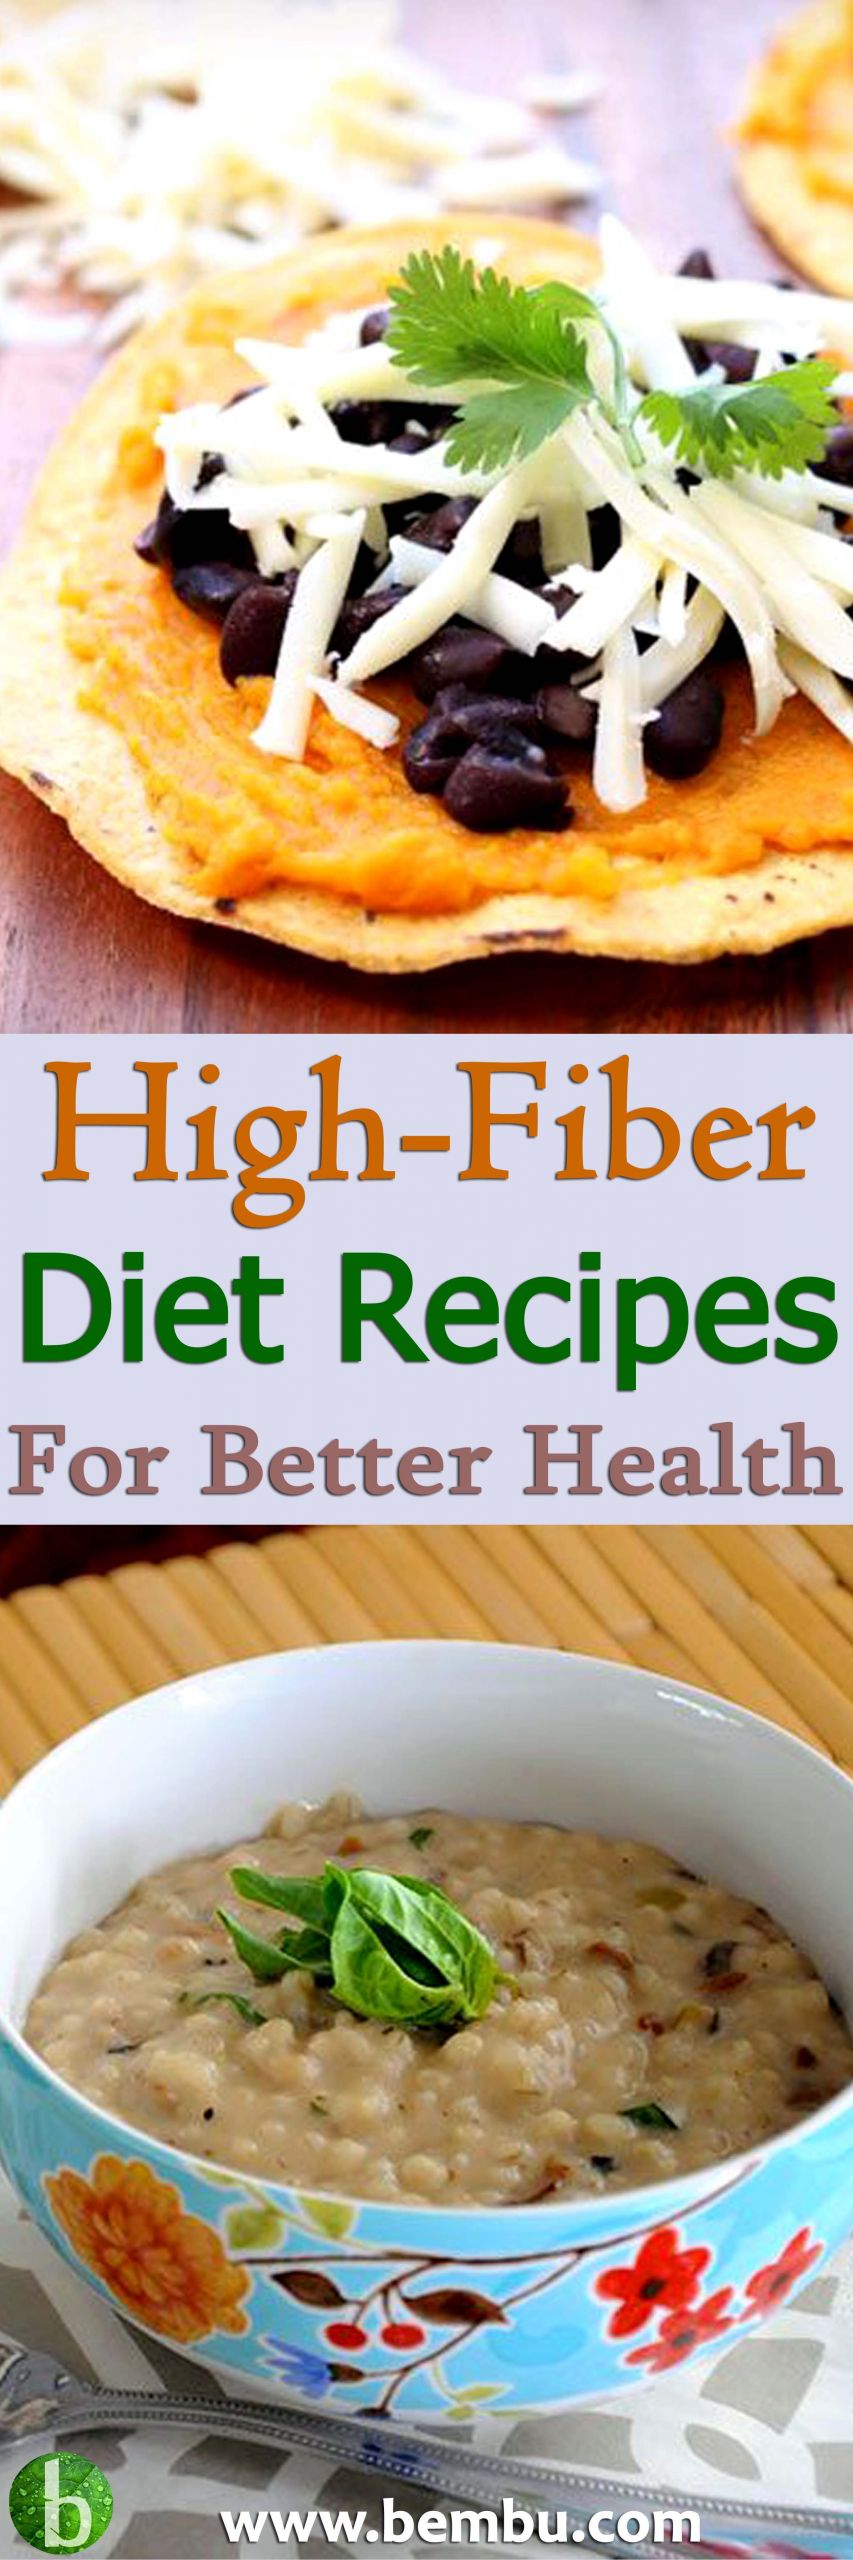 High Fiber Diets Recipes
 15 Best High Fiber Diet Recipes for Better Health